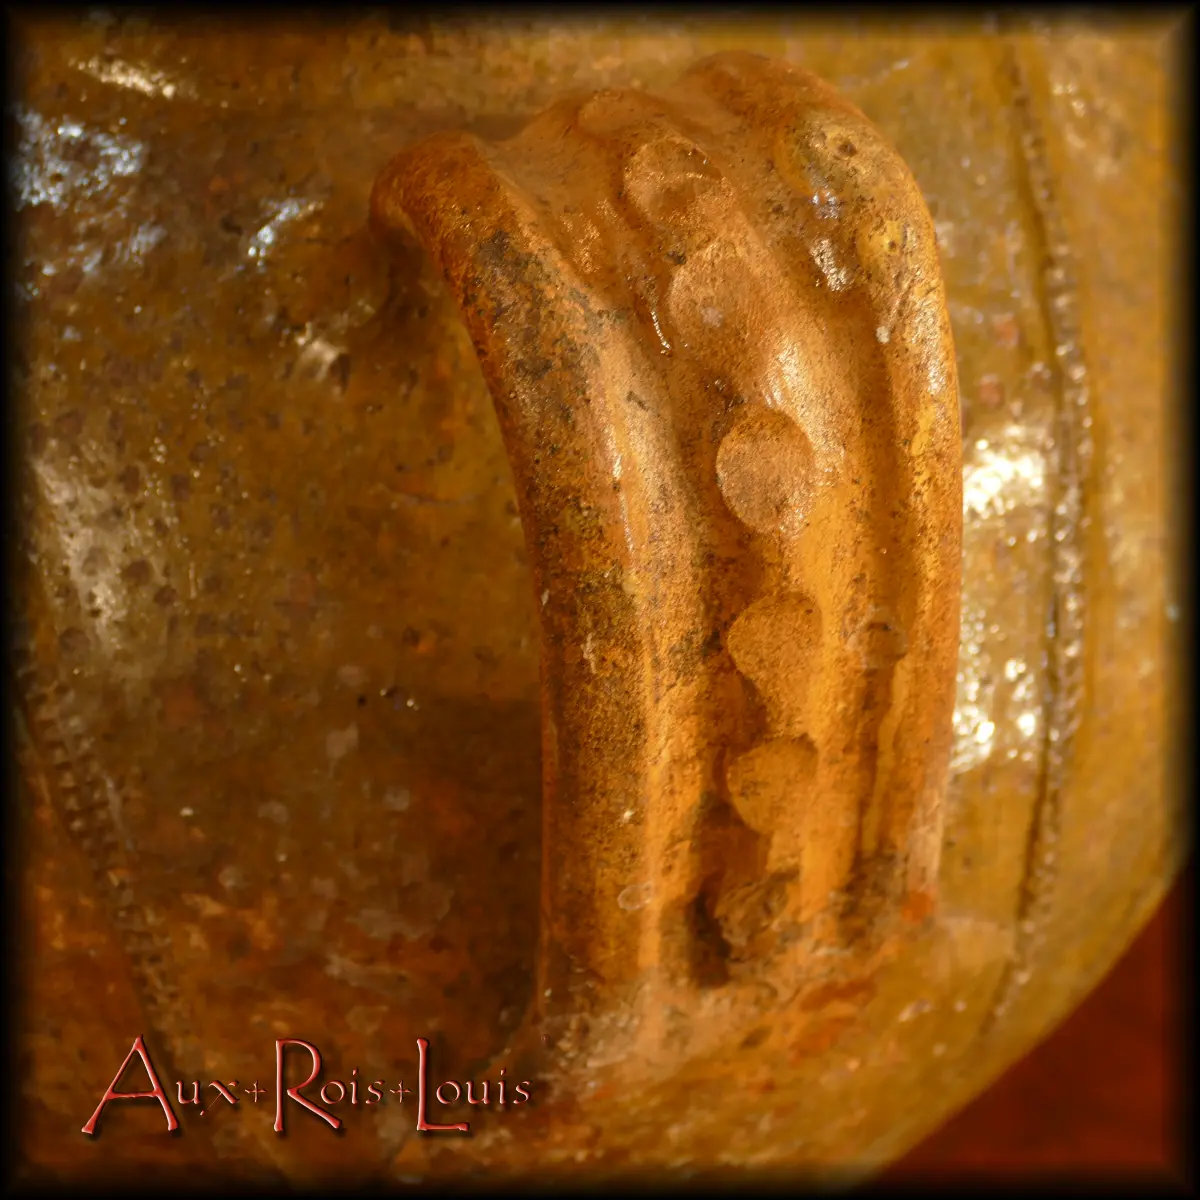 Phénomène tout à fait inhabituel, cette jarre à huile du Quercy possède sur son anse dorsale une bande digitée, c’est-à-dire modelée au doigt, et non à la traditionnelle molette.